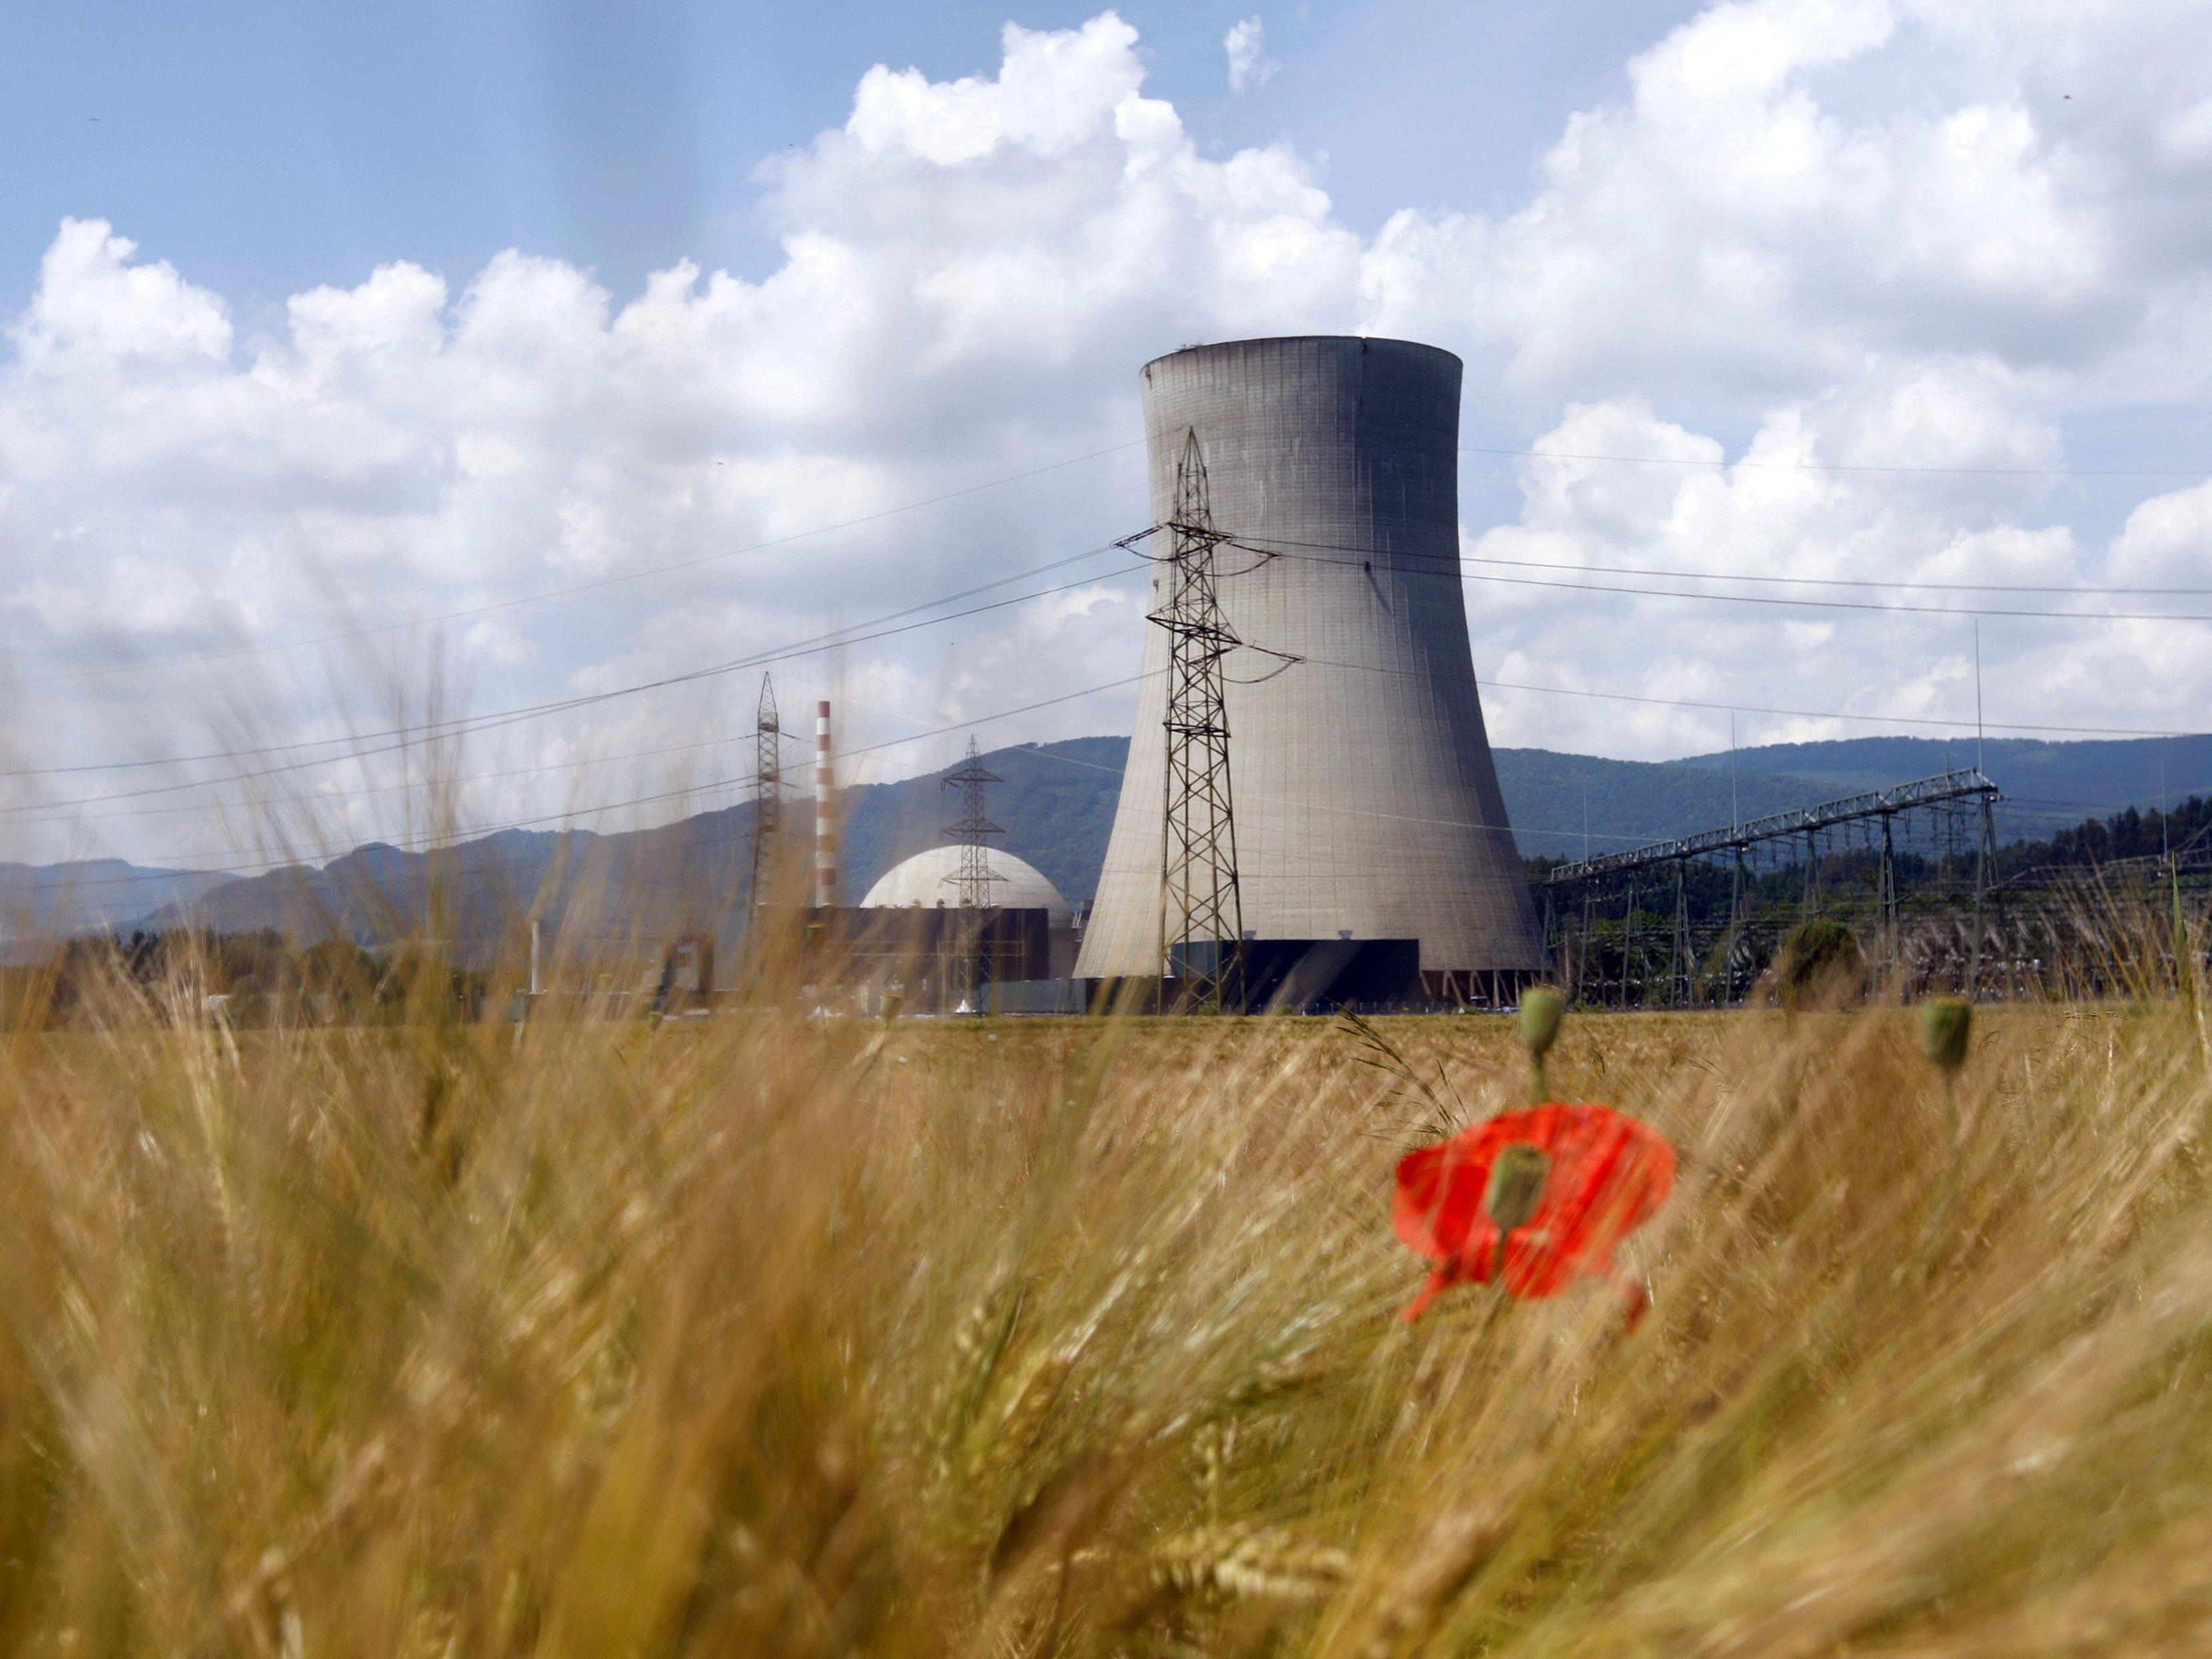 Reaktor in Gösgen außerplanmäßig abgeschaltet - "Keine Gefahr".